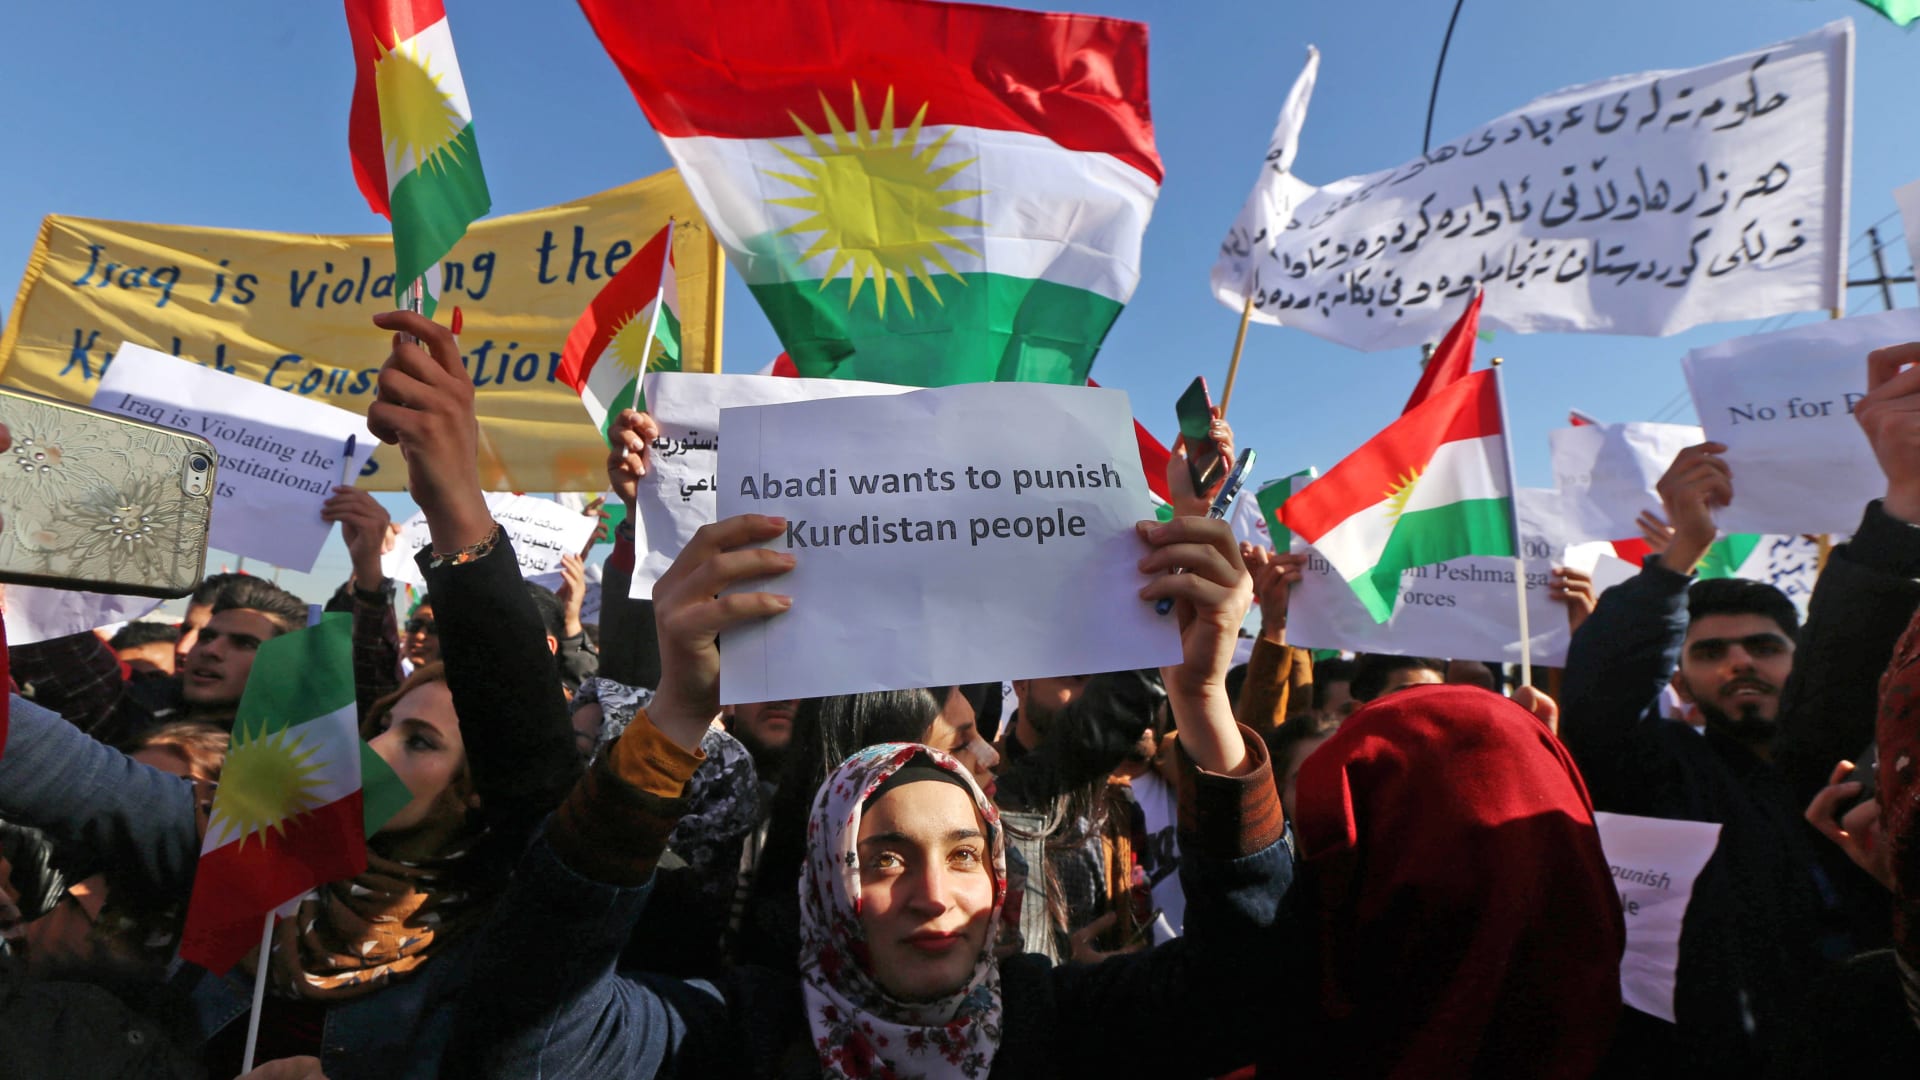 ألمانيا تدعو العراق للحوار مع إقليم كردستان